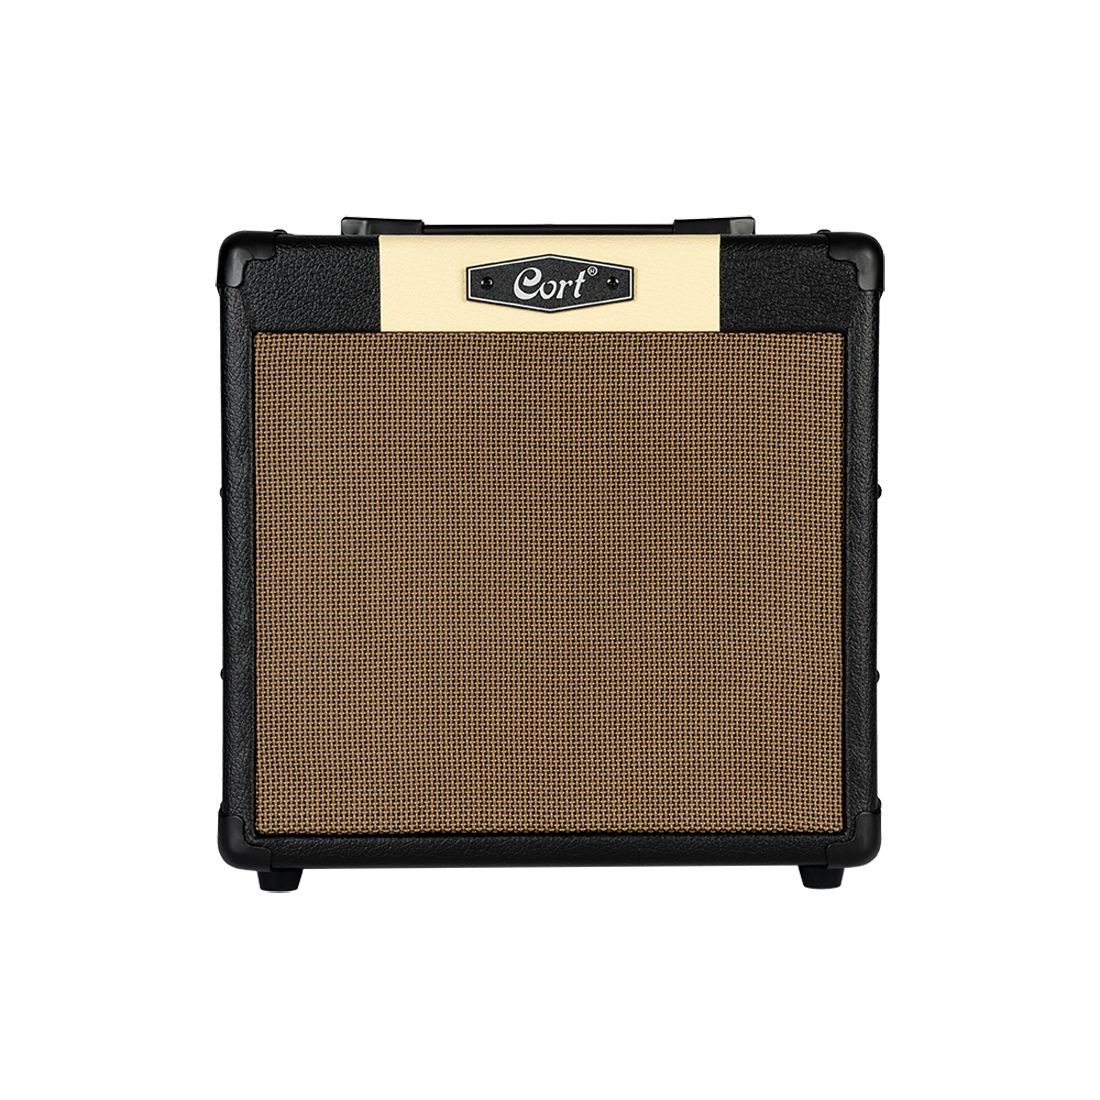 Cort CM15R Guitar Practice Amplifier